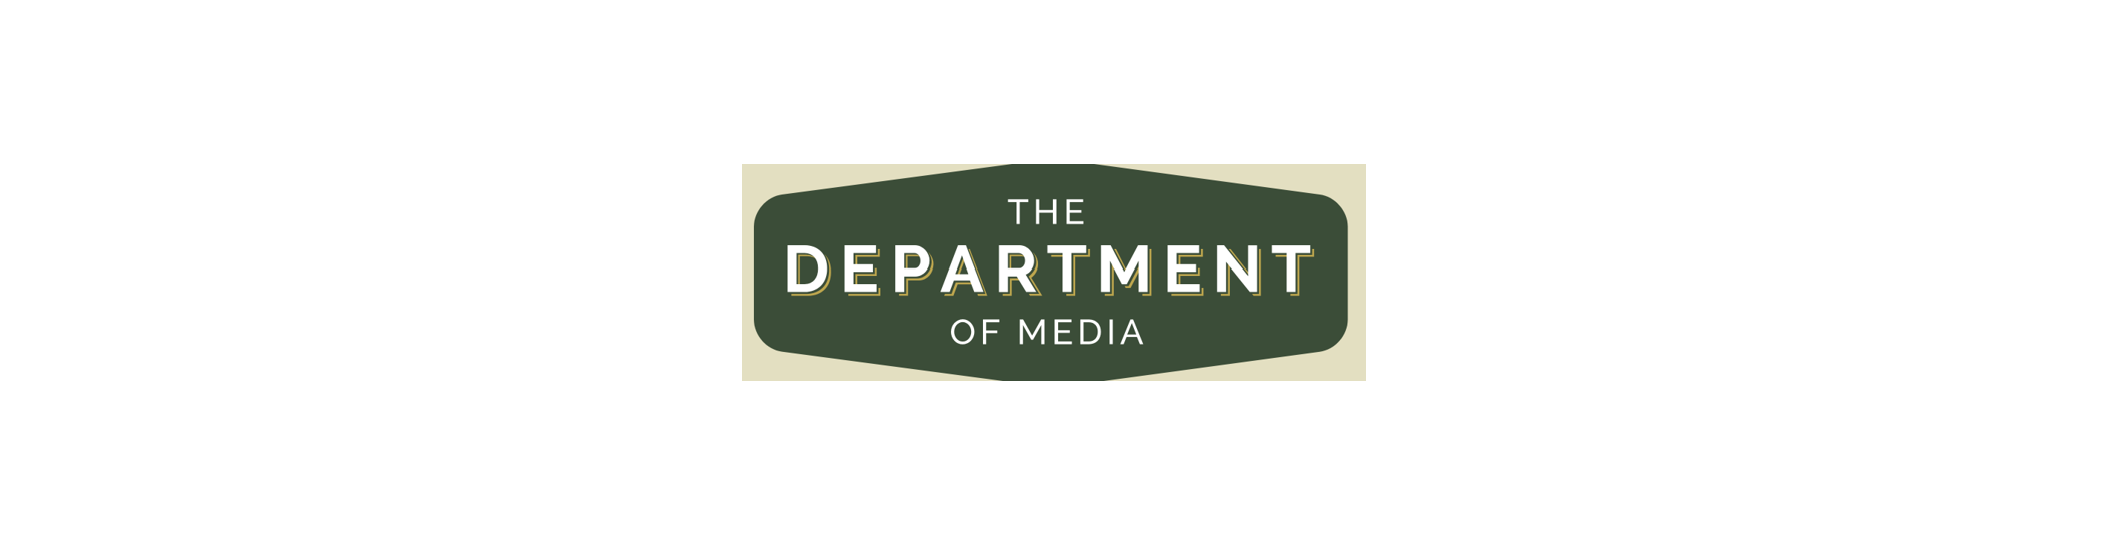 Department of Media